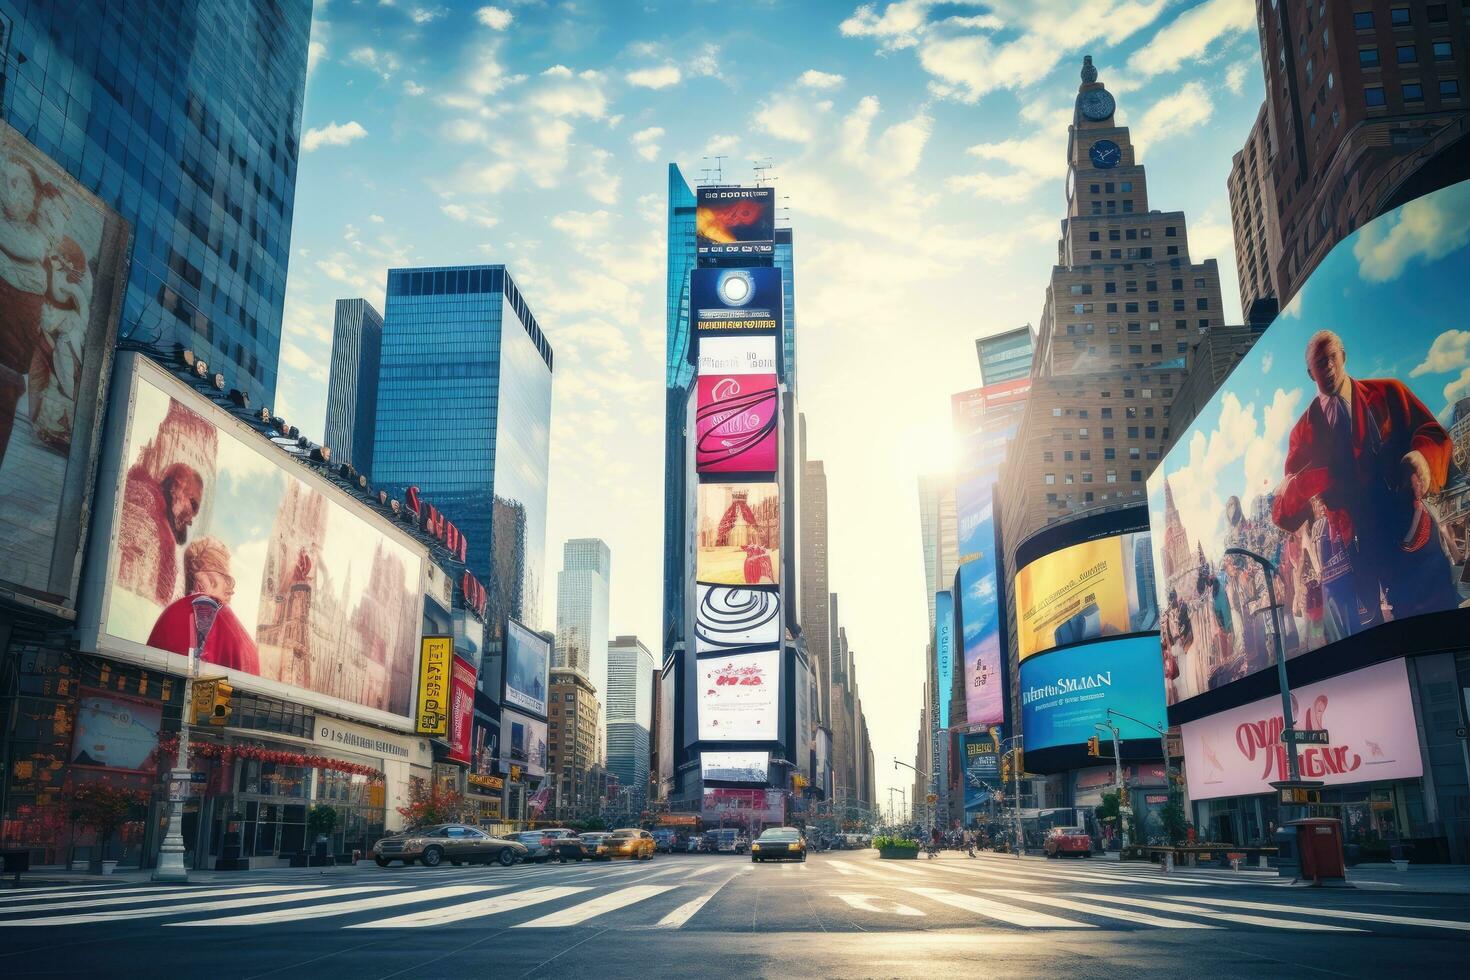 s quadrado, destaque com Broadway teatros e enorme número do conduziu sinais, é uma símbolo do Novo Iorque cidade e a Unidos estados, famoso vezes quadrado ponto de referência dentro Novo Iorque centro da cidade, ai gerado foto